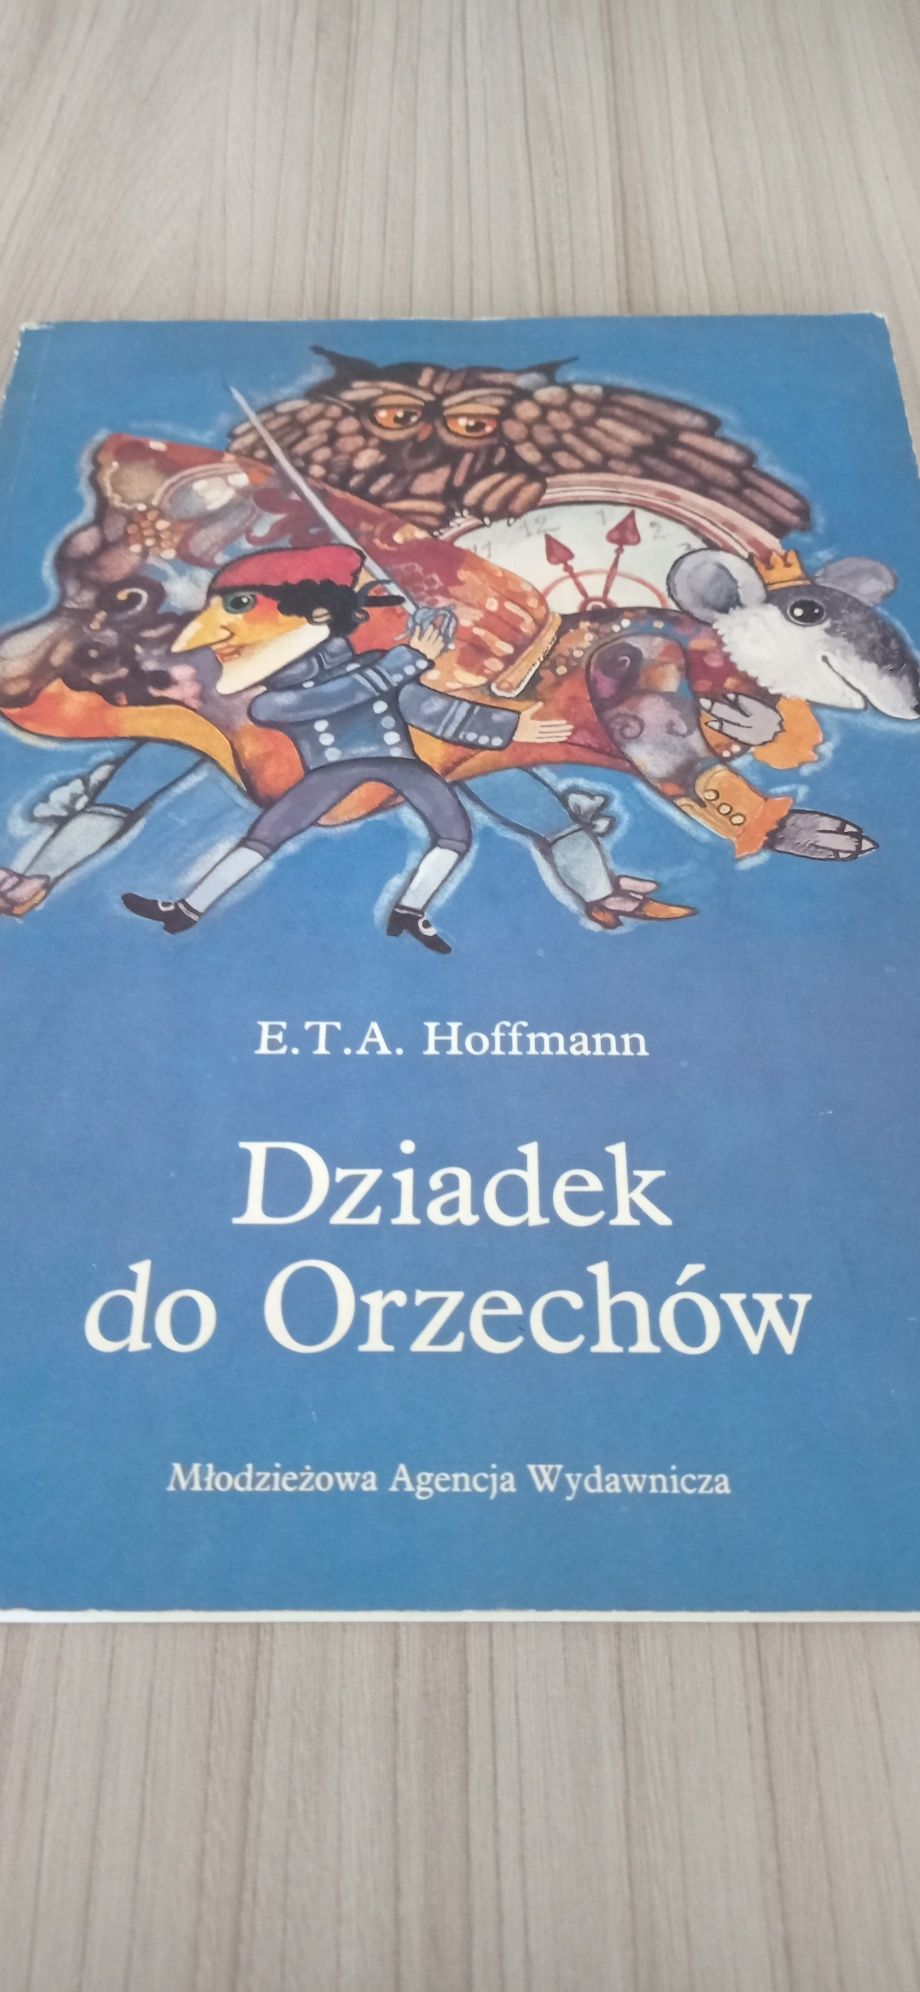 Książka "Dziadek do Orzechów"